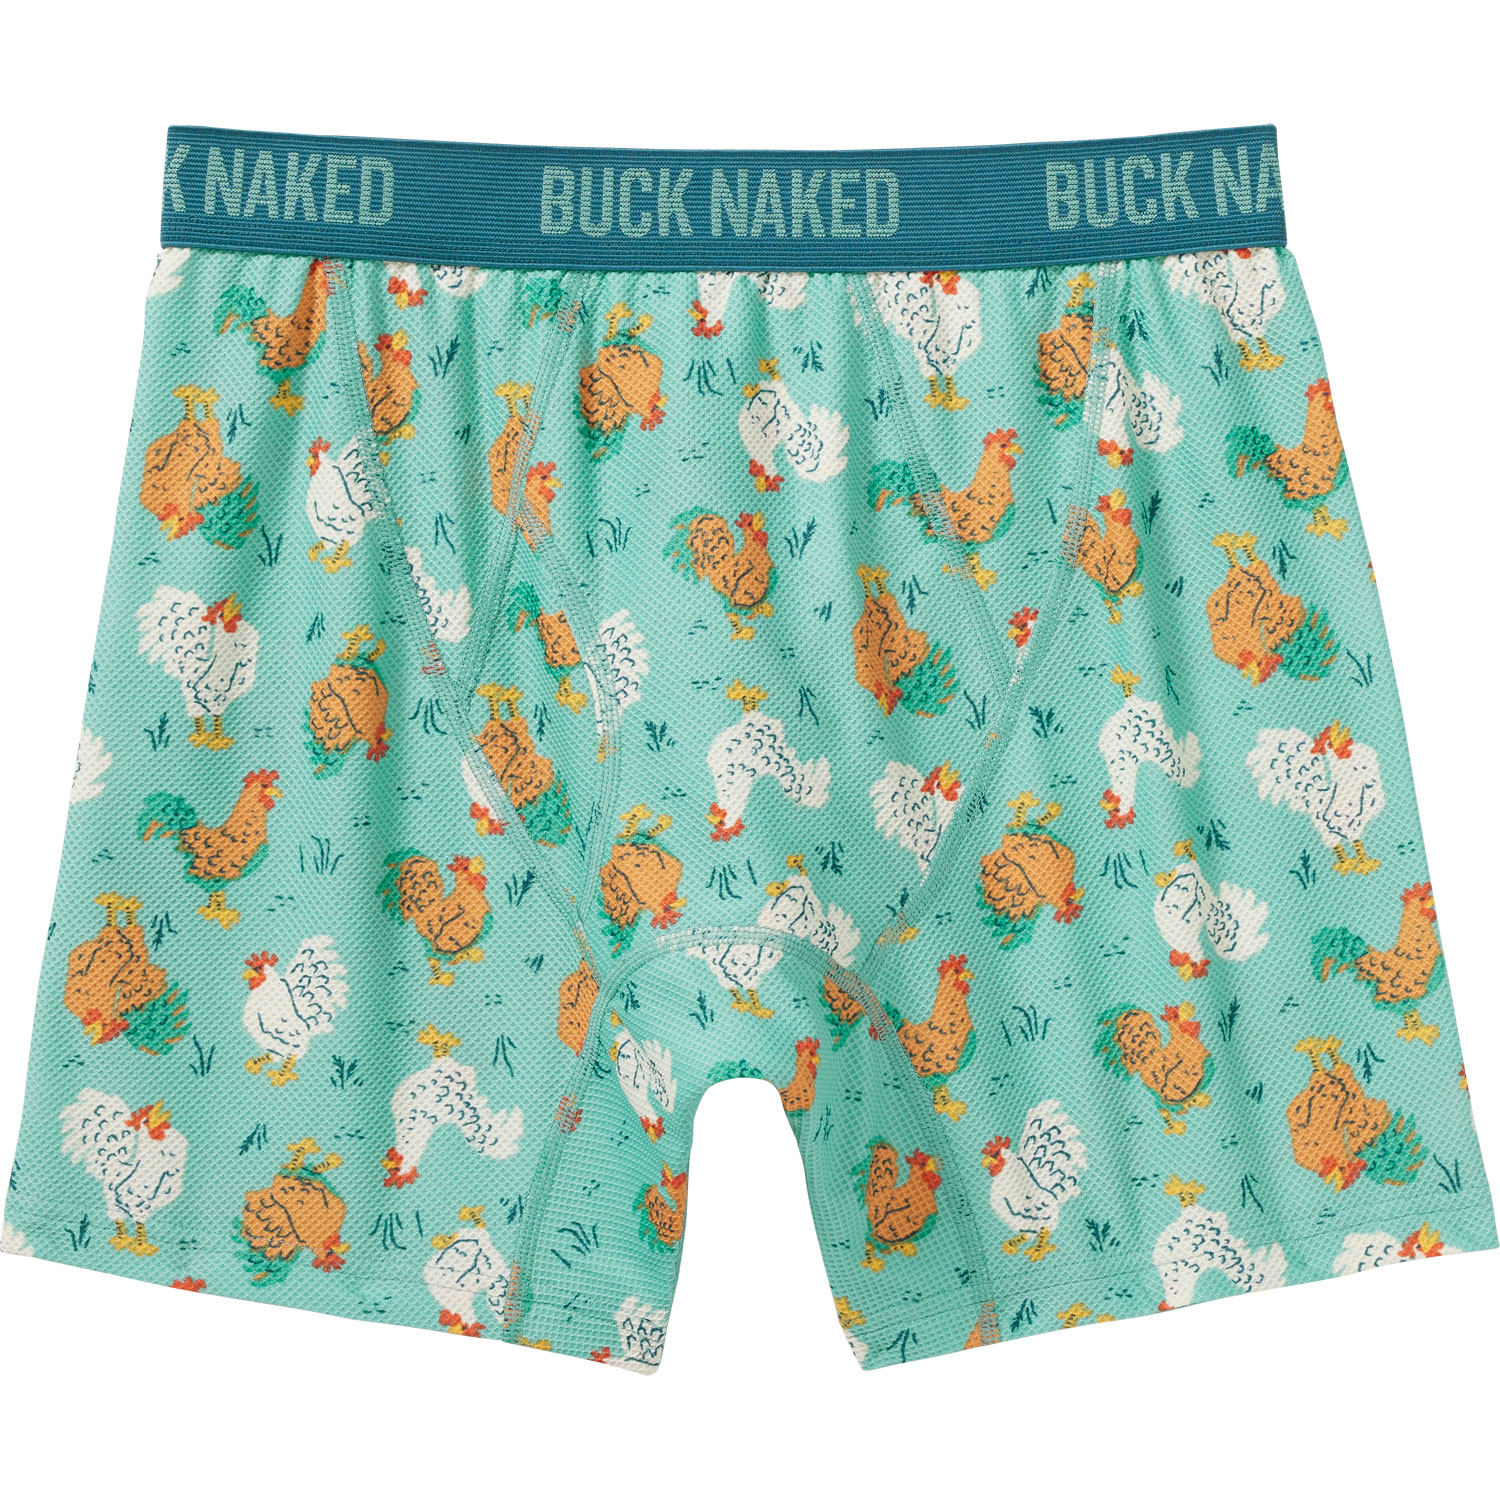 Duluth Trading Company Men's Buck Naked Underwear Boxer Briefs 2XL Orange